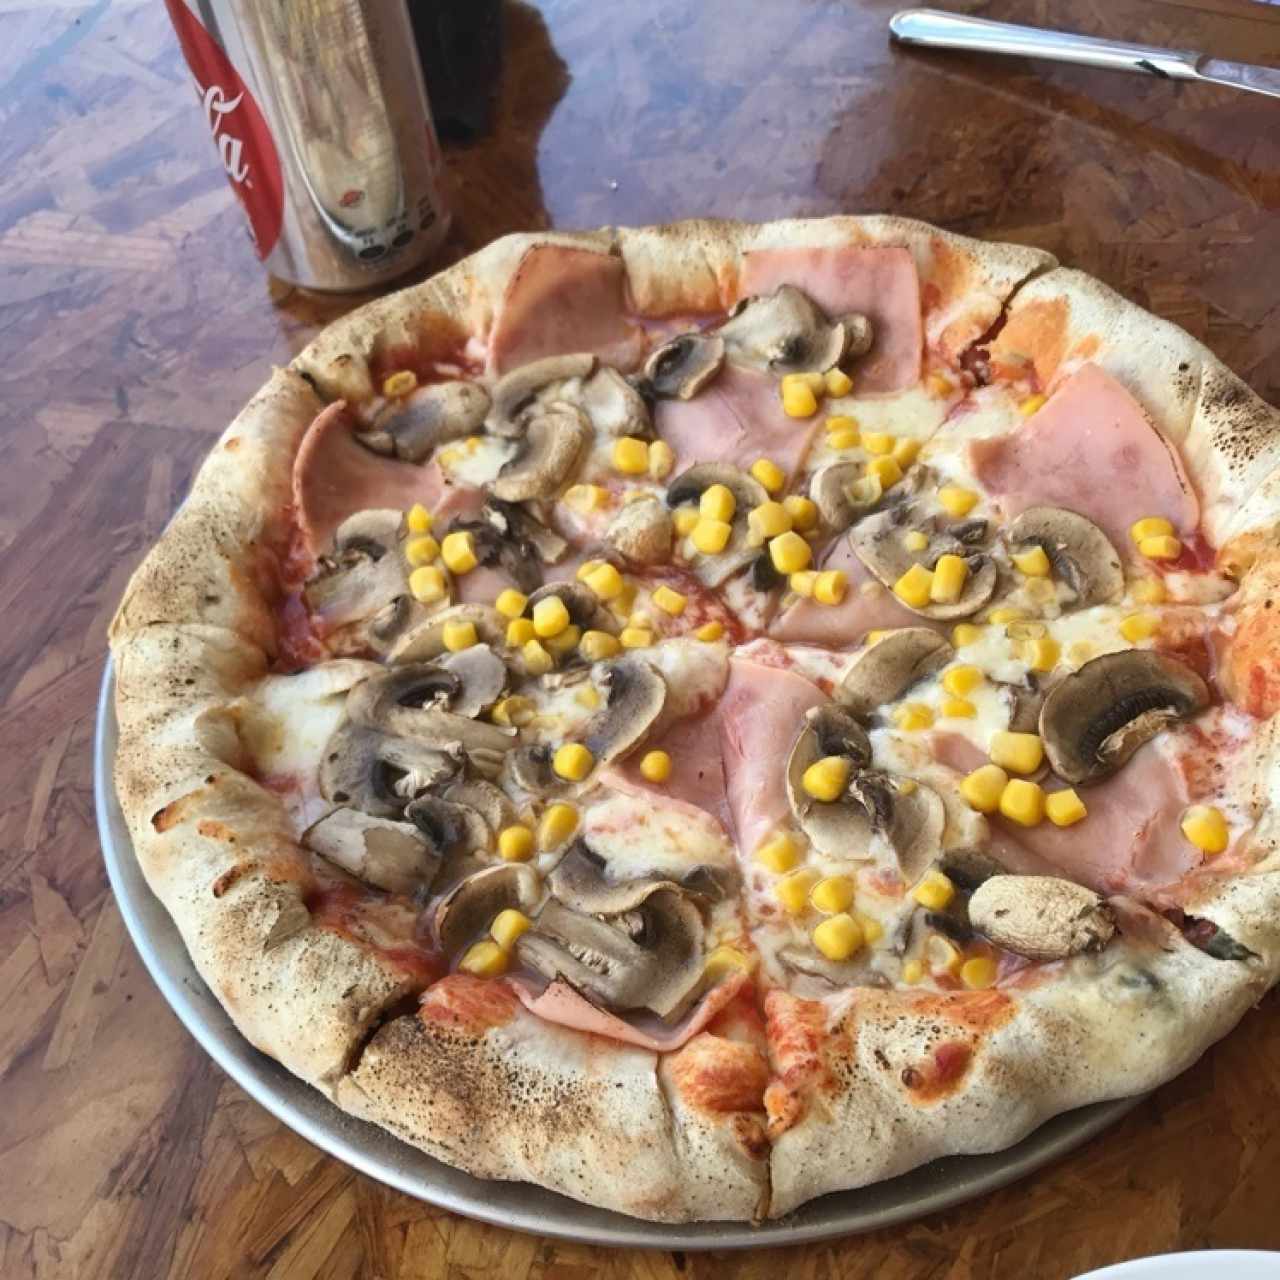 Pizza de hongos y jamón con extra de maíz y borde relleno de pepperoni, mozzarella y aceitunas negras